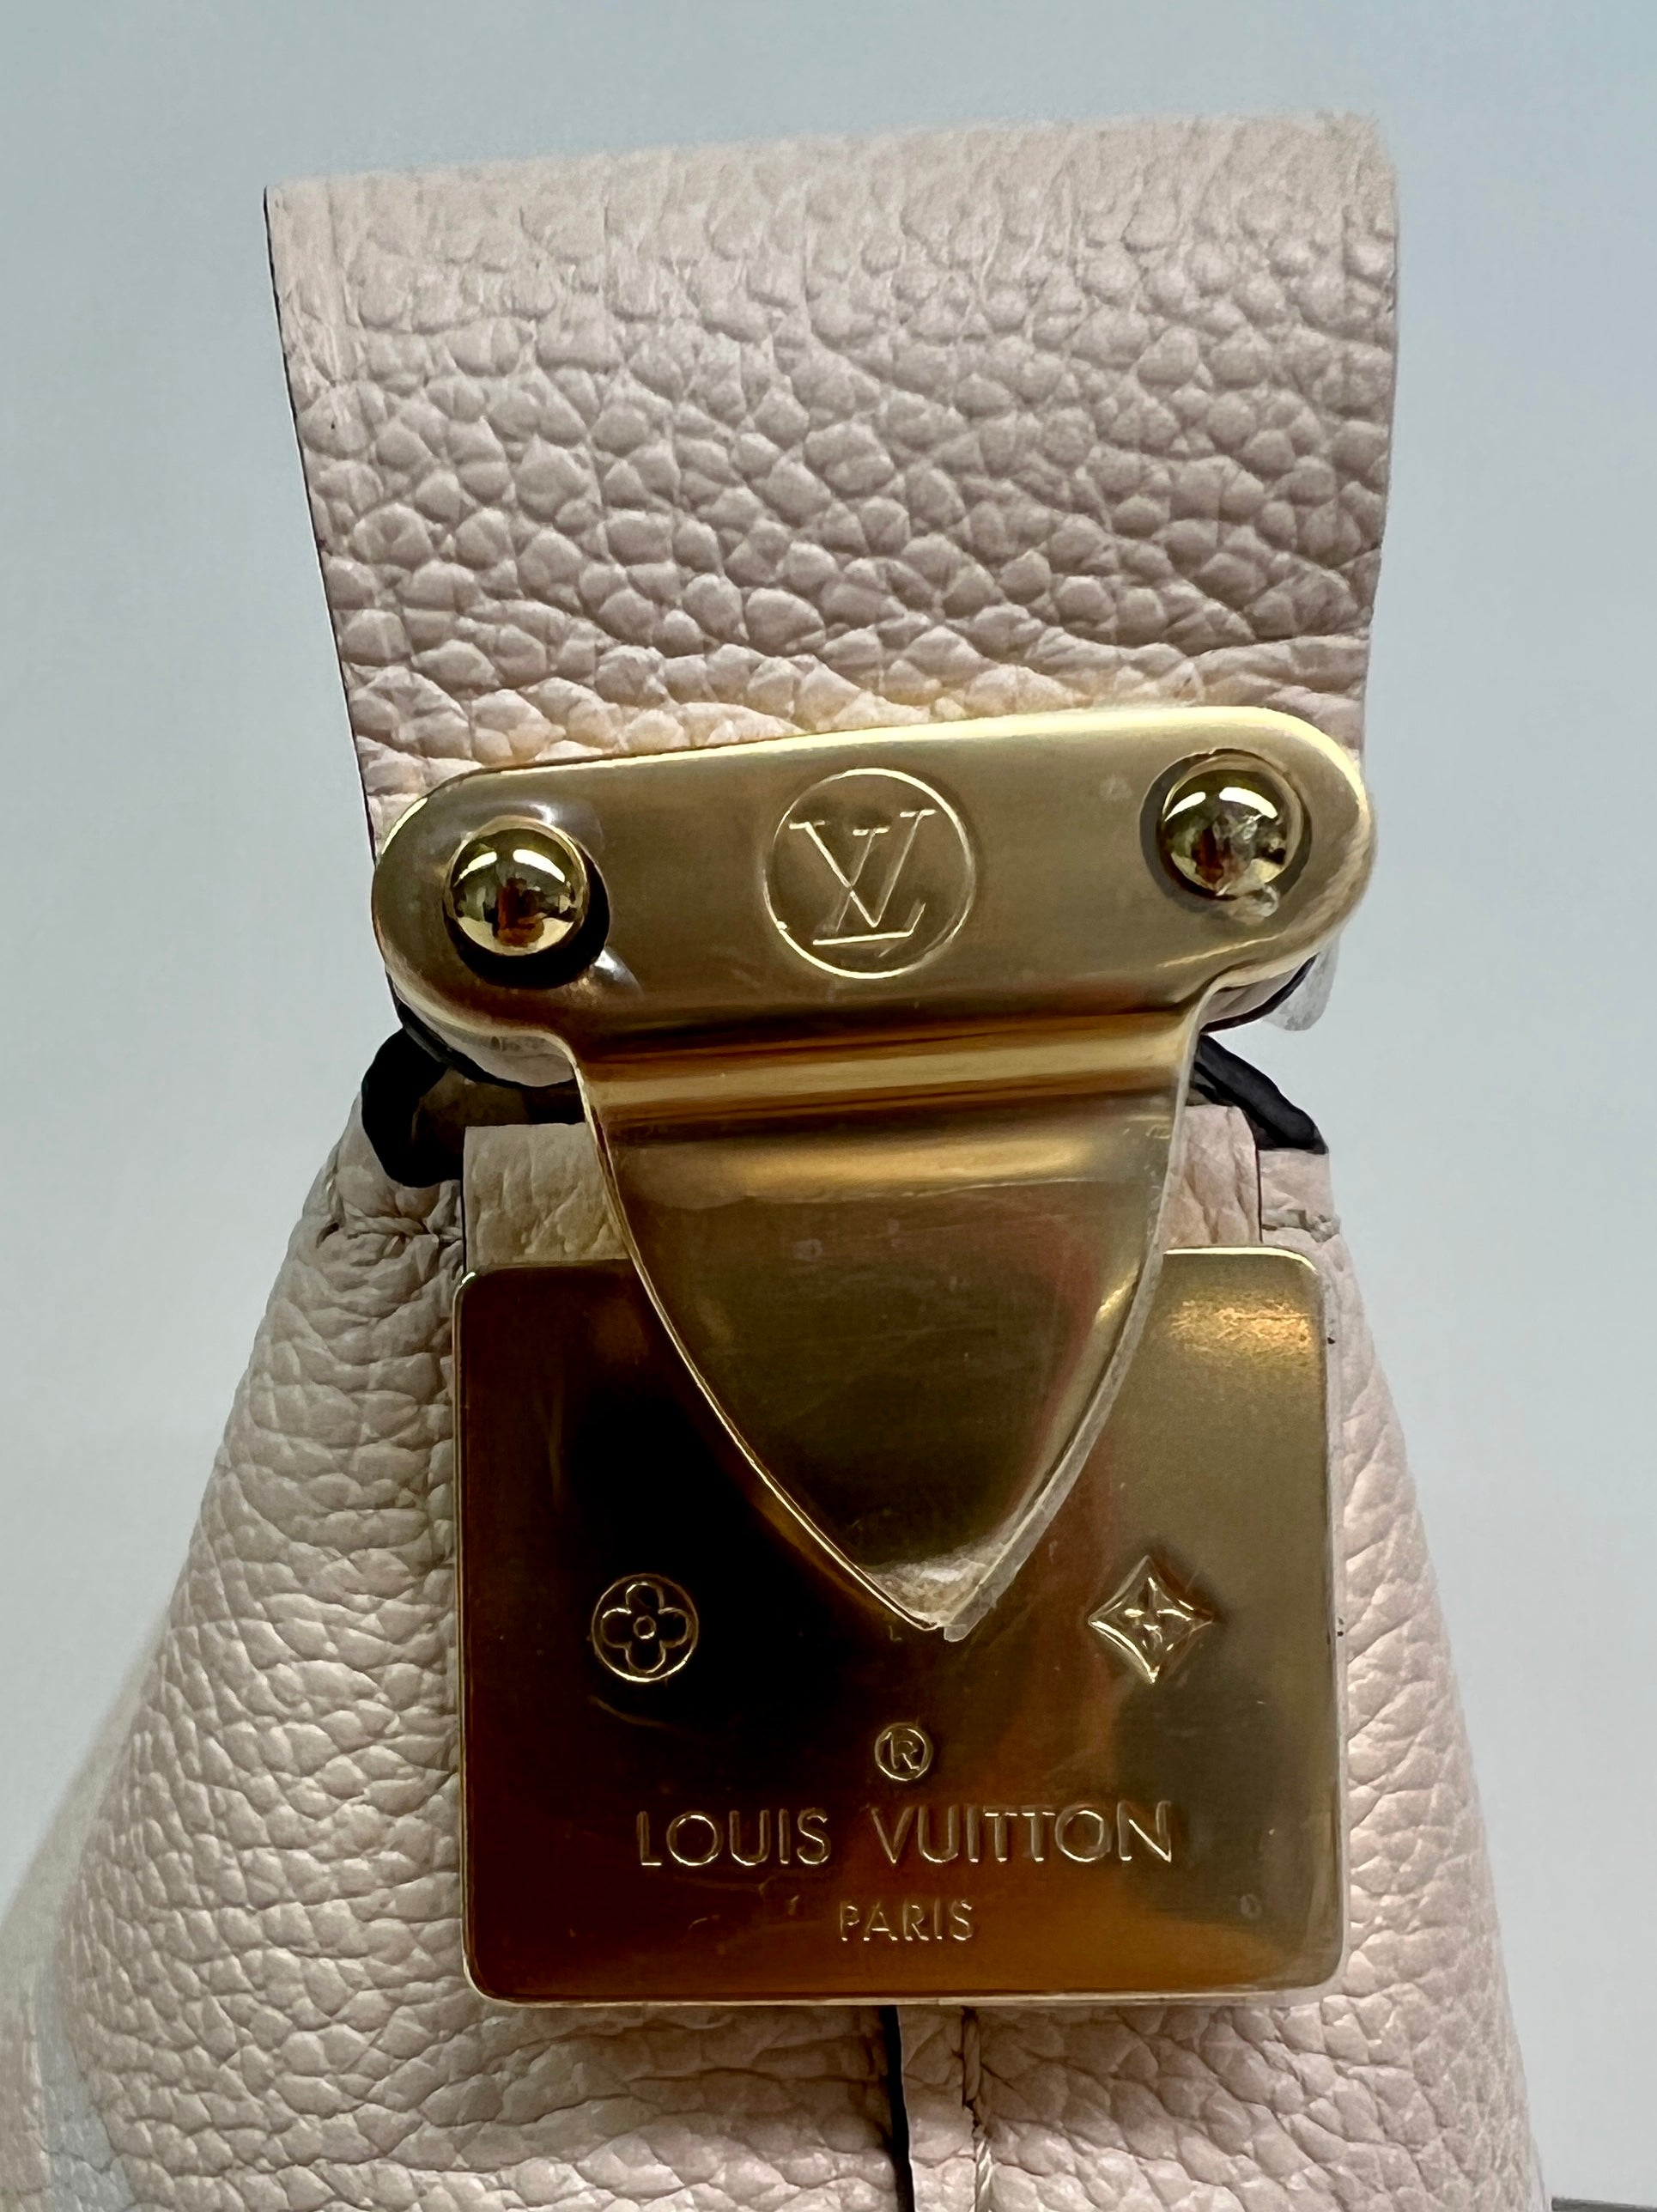 Second Hand Louis Vuitton Designertaschen jetzt online kaufen auf kaleaz.